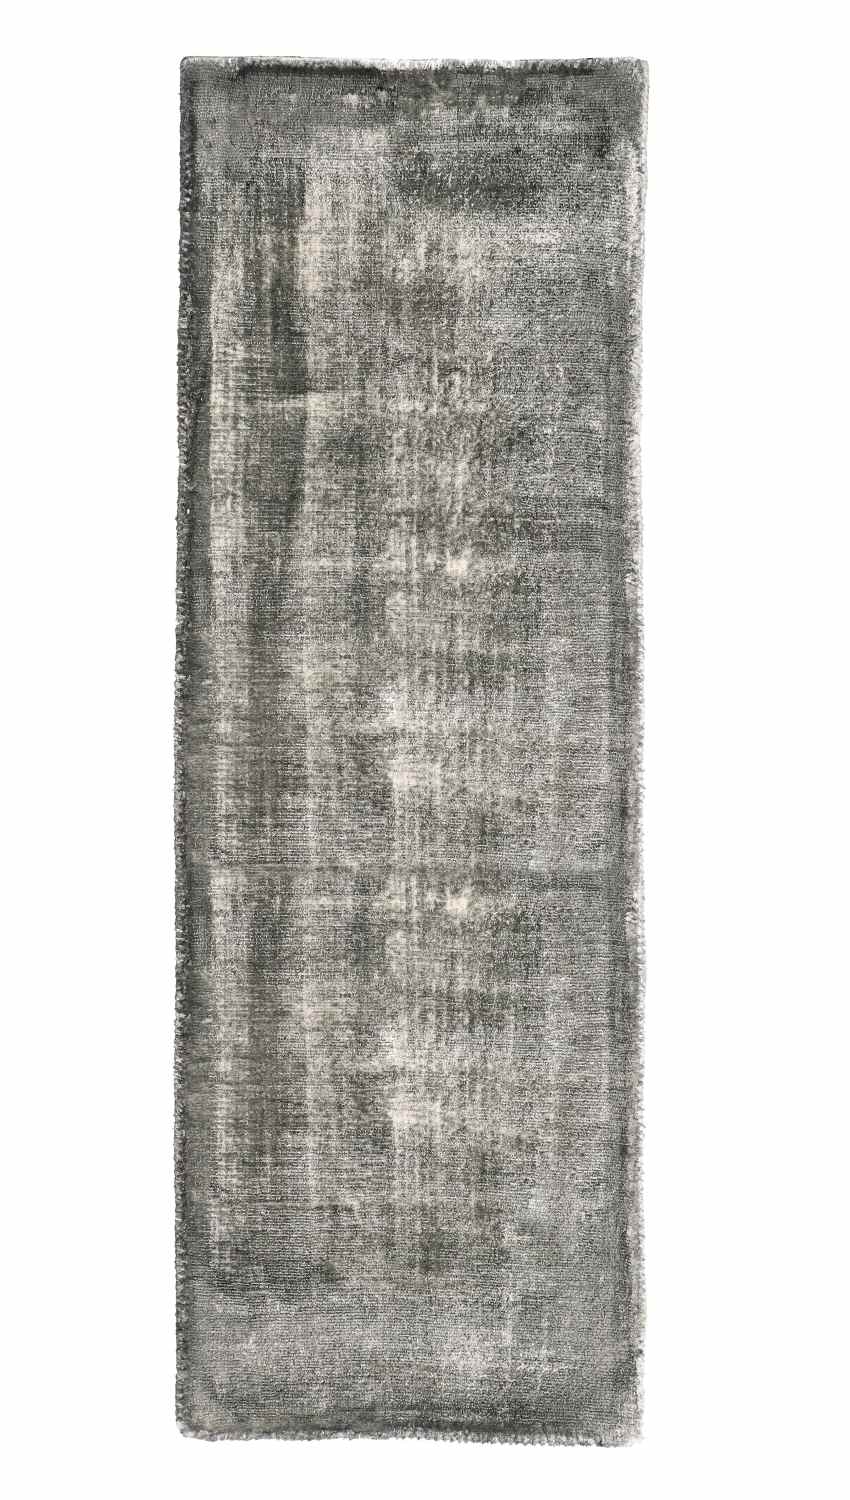 Der Teppich Rashmi überzeugt mit seinem modernen Design. Gefertigt wurde die Vorderseite aus Viskose und die Rückseite aus Baumwolle. Der Teppich besitzt eine grauen Farbton und die Maße von 80x250 cm.